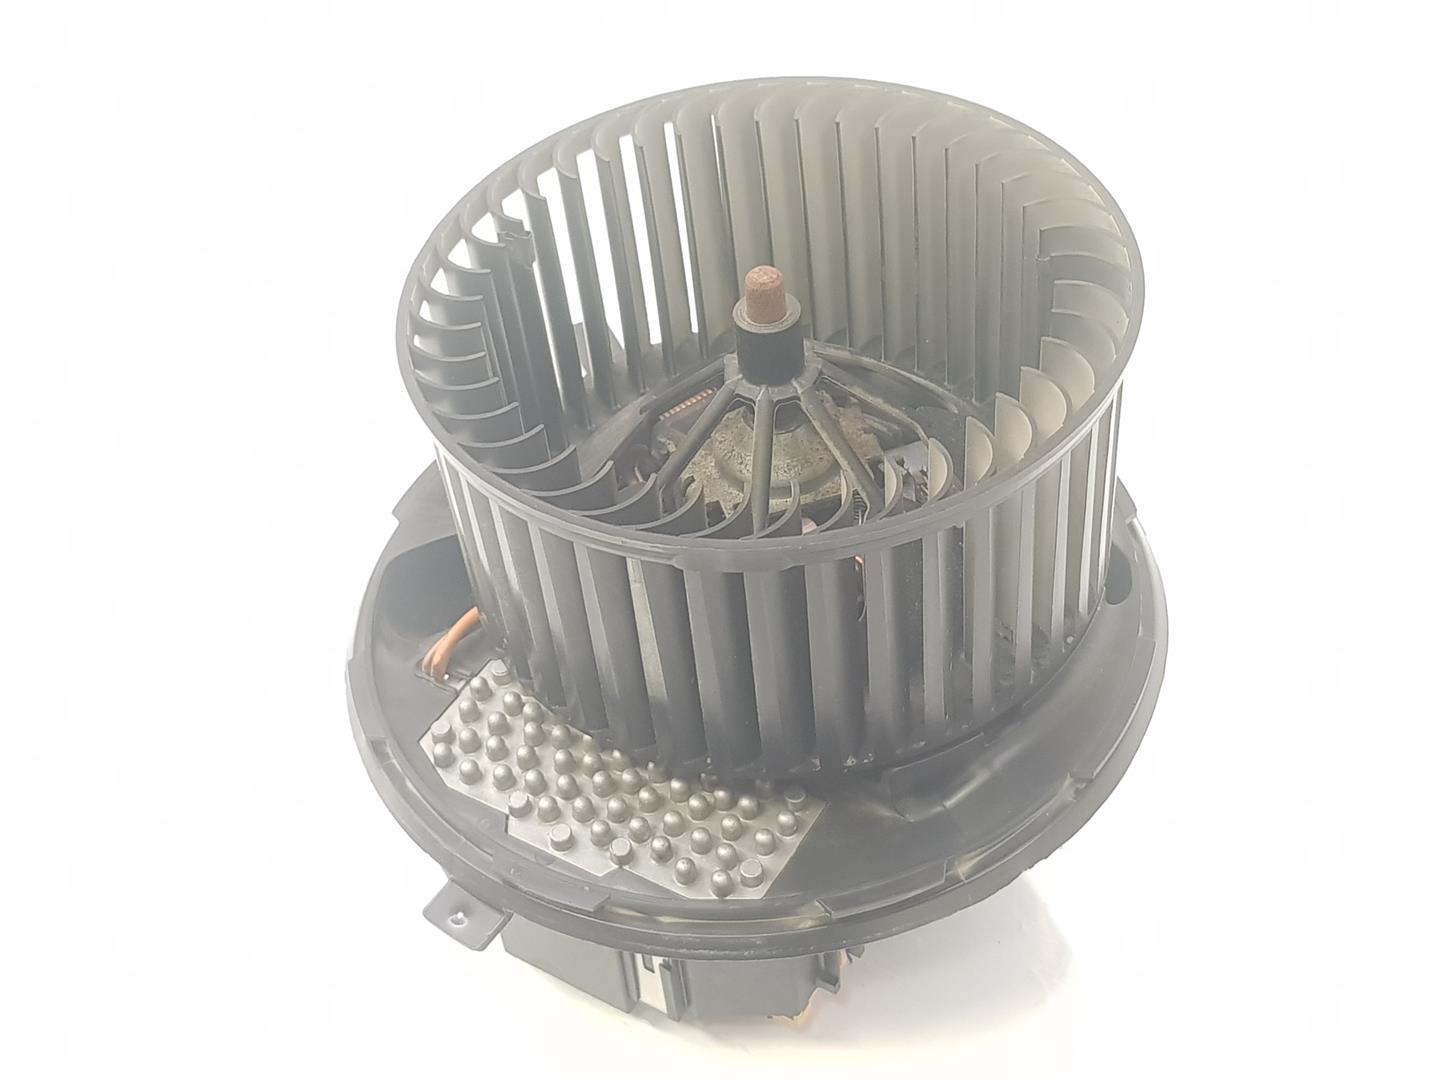 VOLKSWAGEN Caddy 4 generation (2015-2020) Heater Blower Fan 3C0907521G, 3C0907521G 19837672